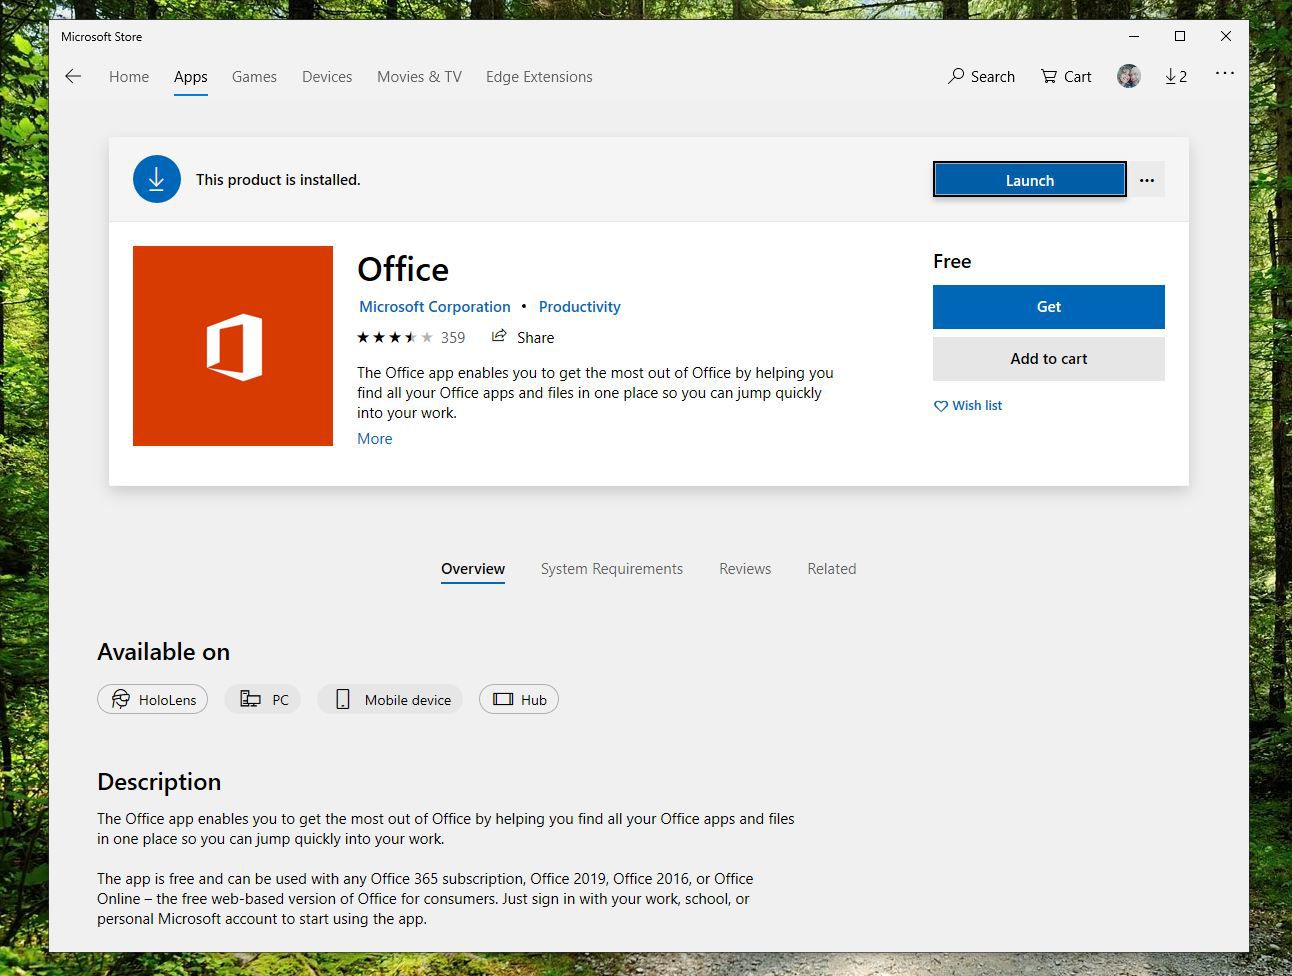 Screenshot van de Get-knop in de Office-app in de Microsoft Store